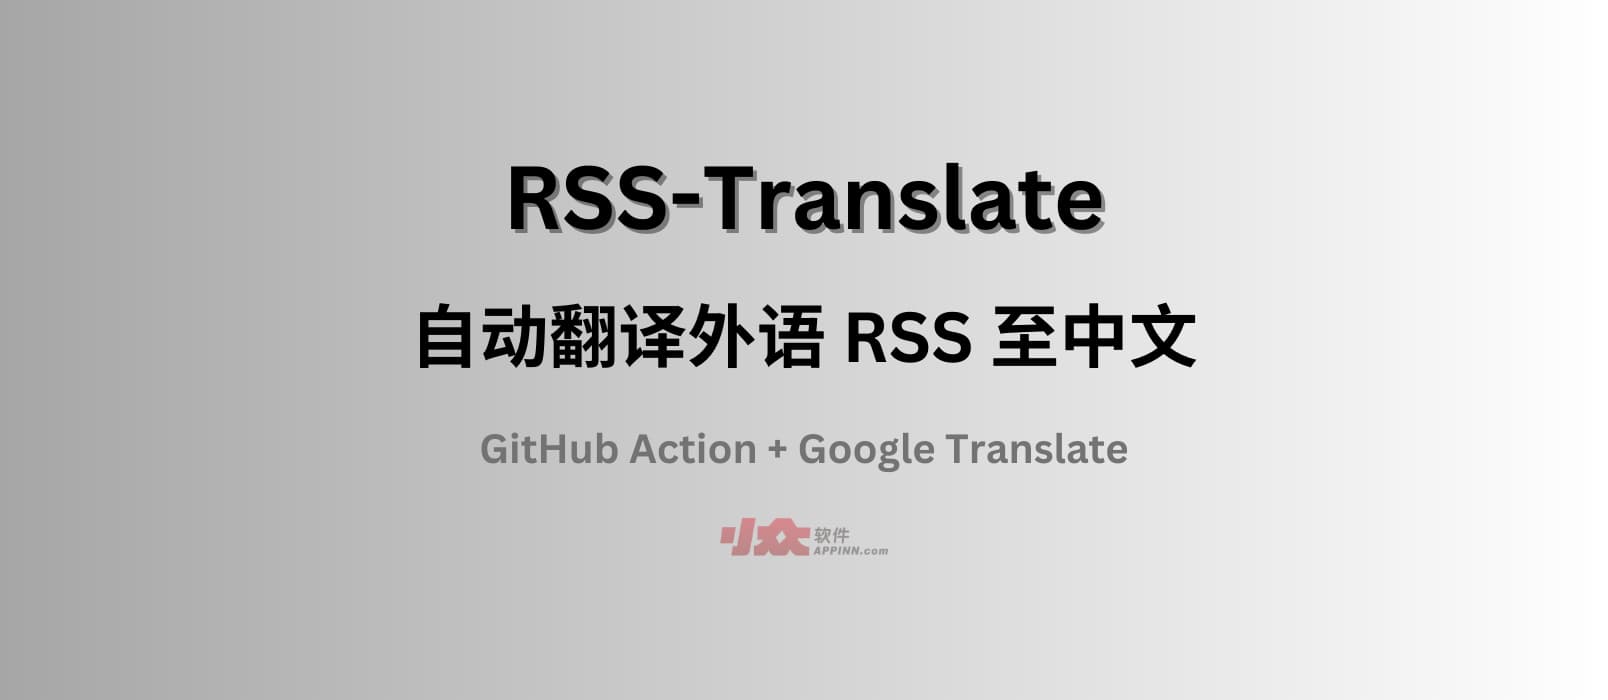 RSS-Translate - 自动翻译外语 RSS 至中文